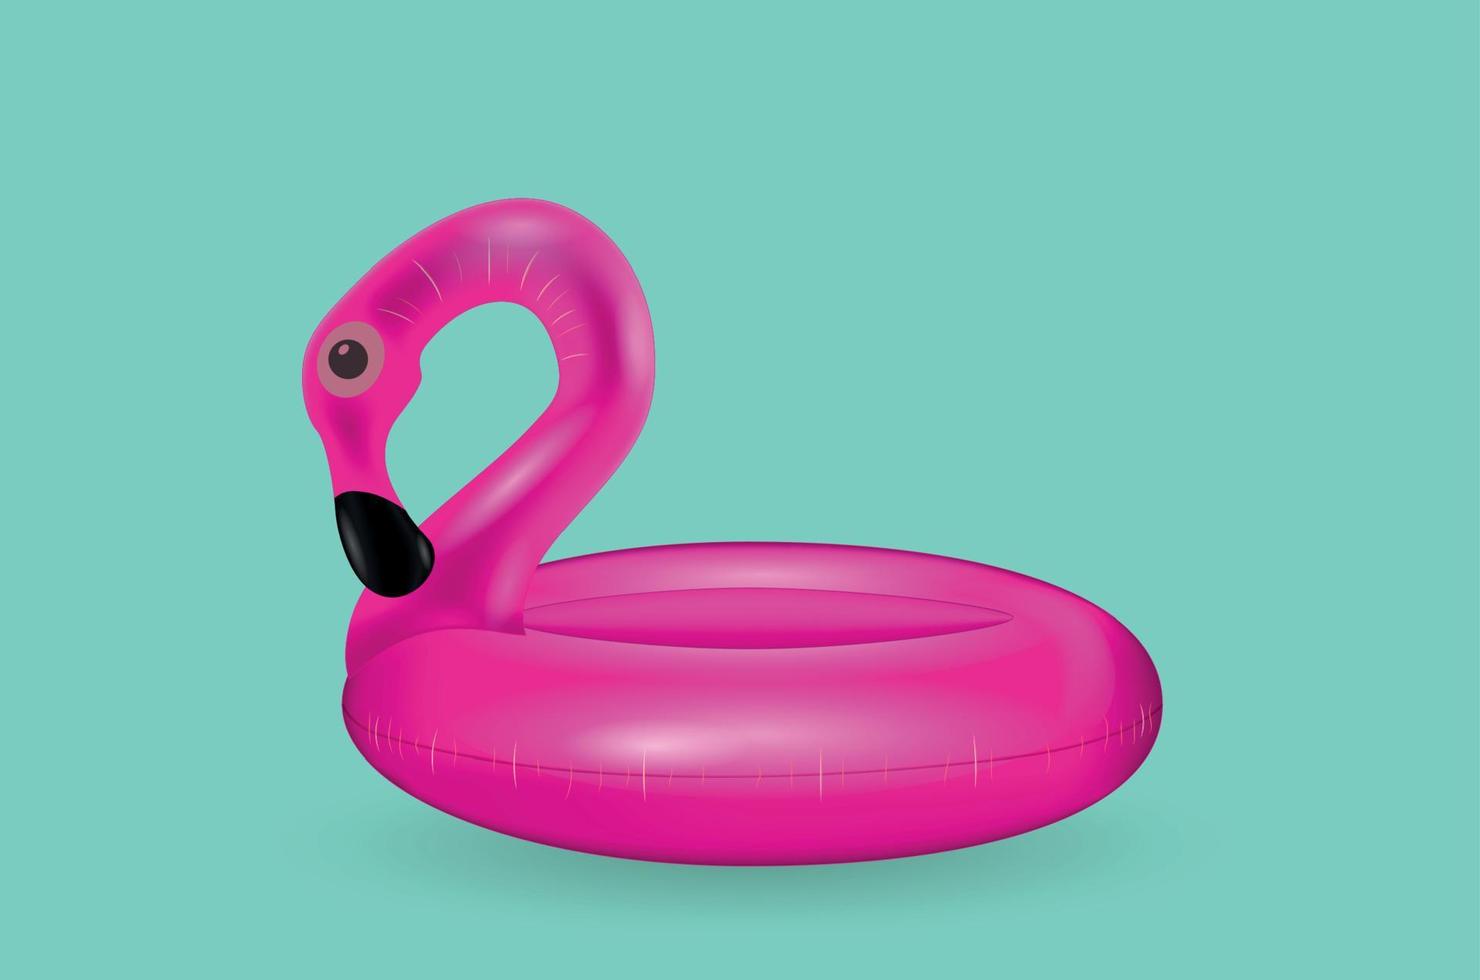 opblaasbare cirkel om te zwemmen en te ontspannen op zee roze flamingo opblaasbaar. vector illustratie